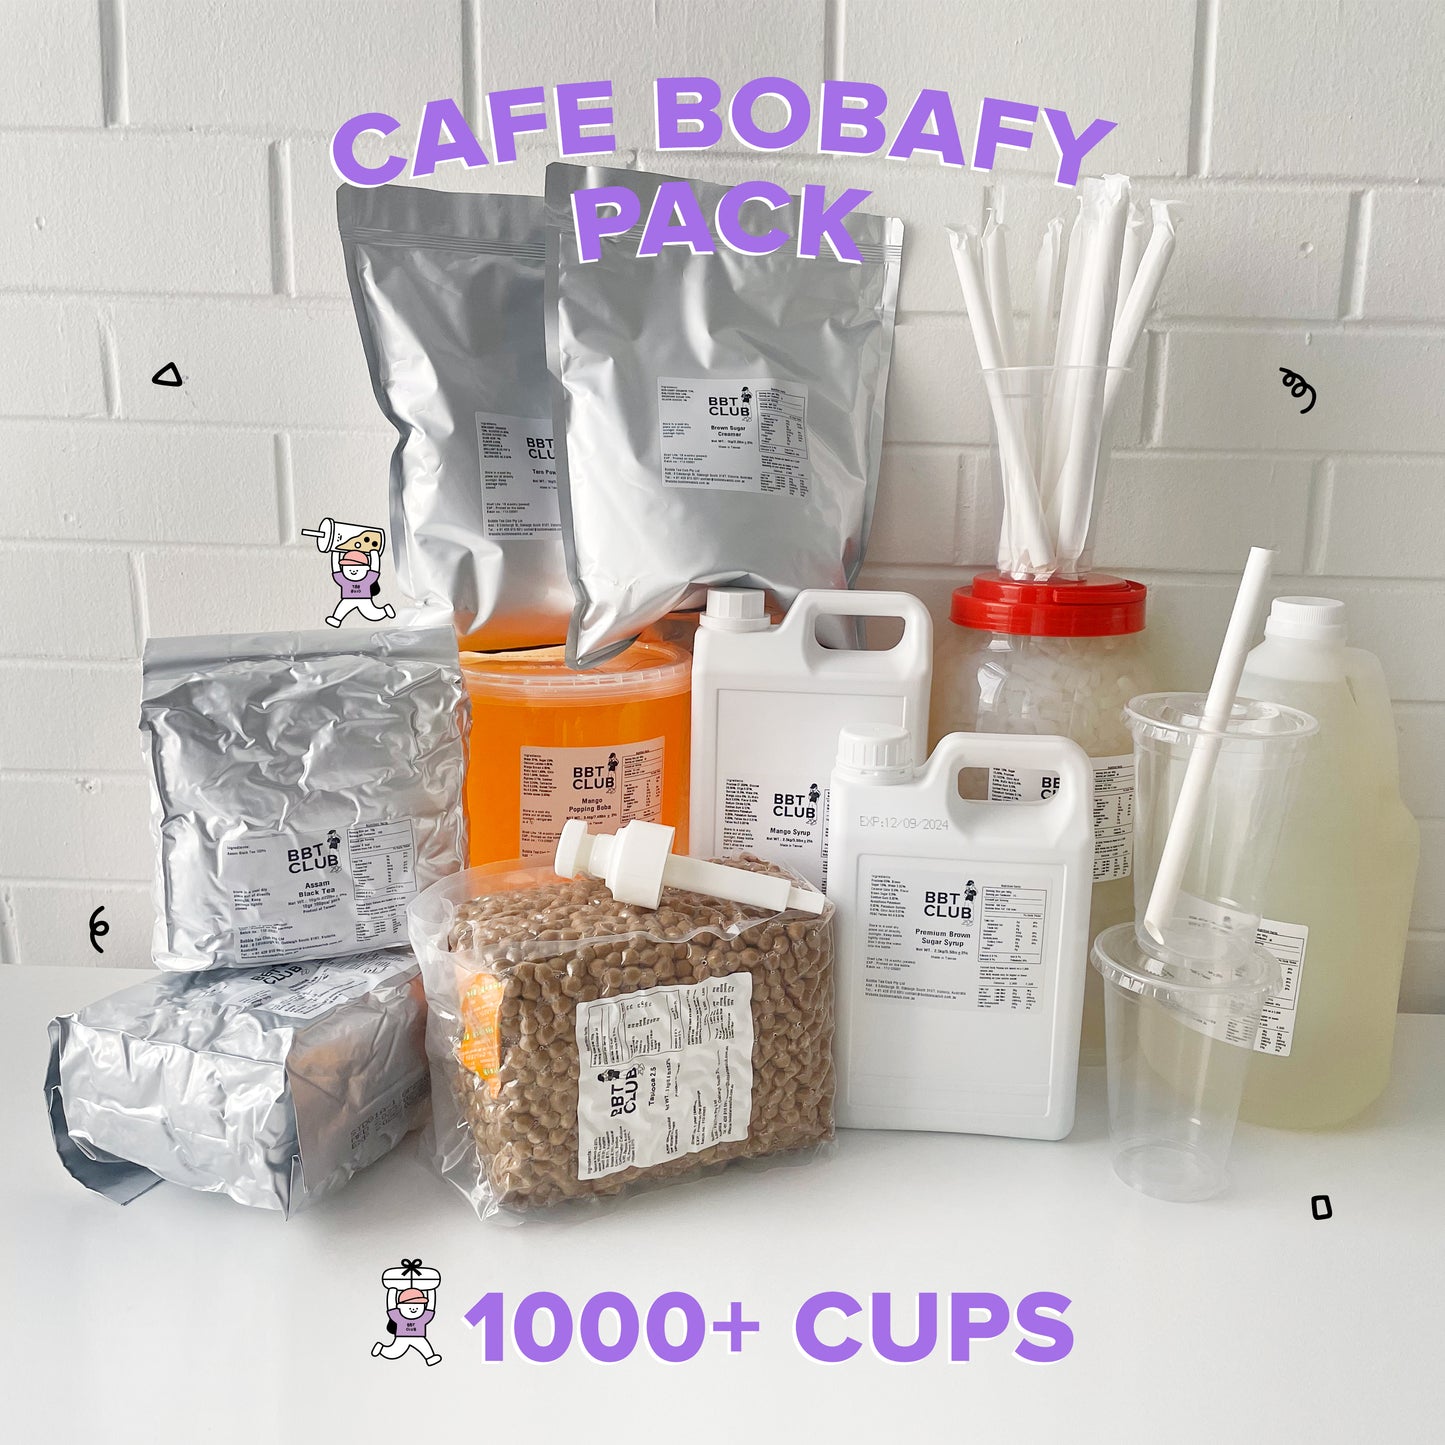 Cafe Bobafy Pack